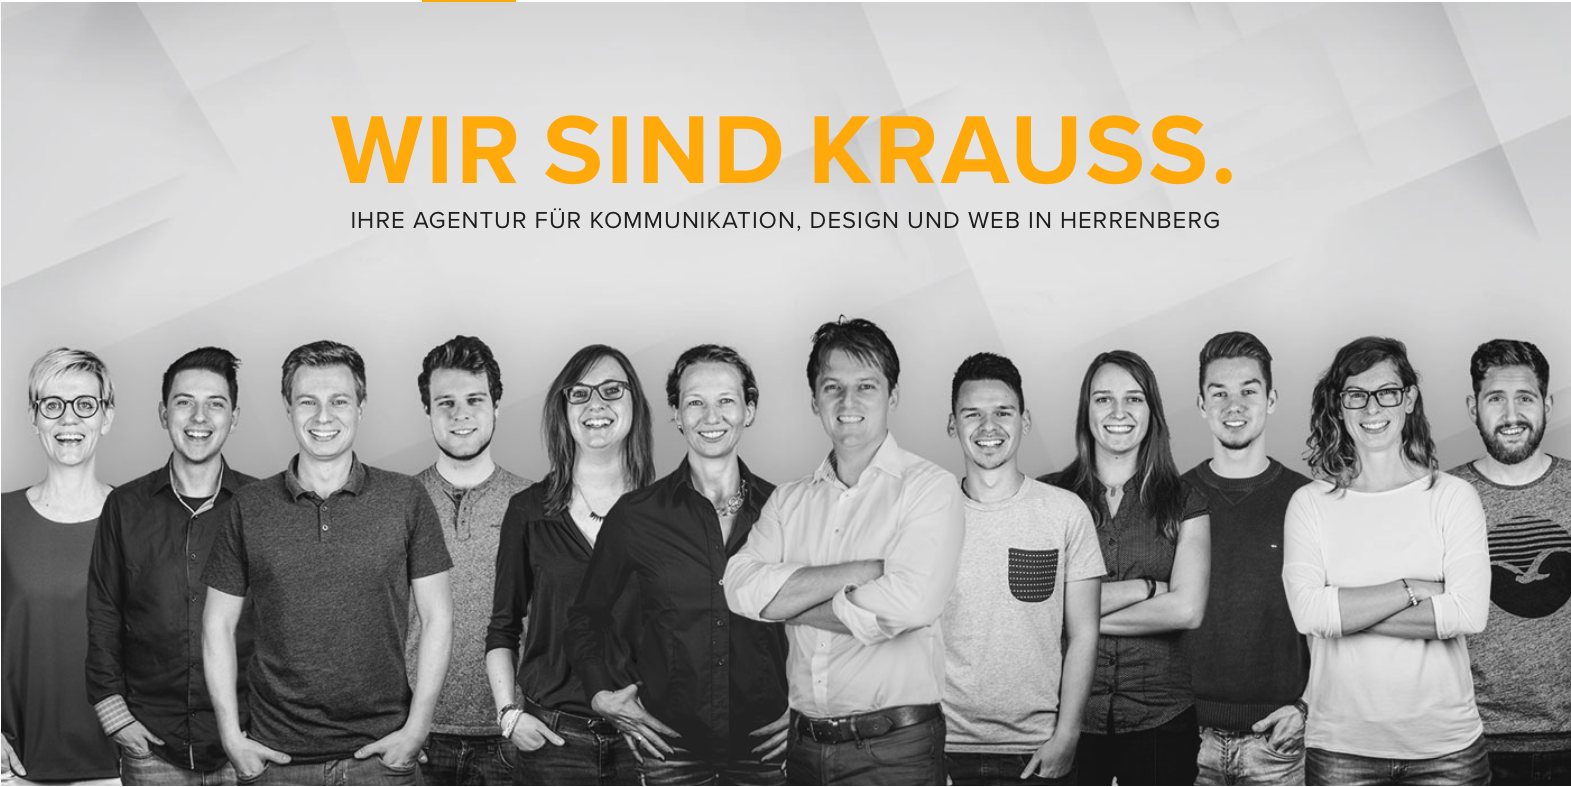 Agentur Krauss GmbH